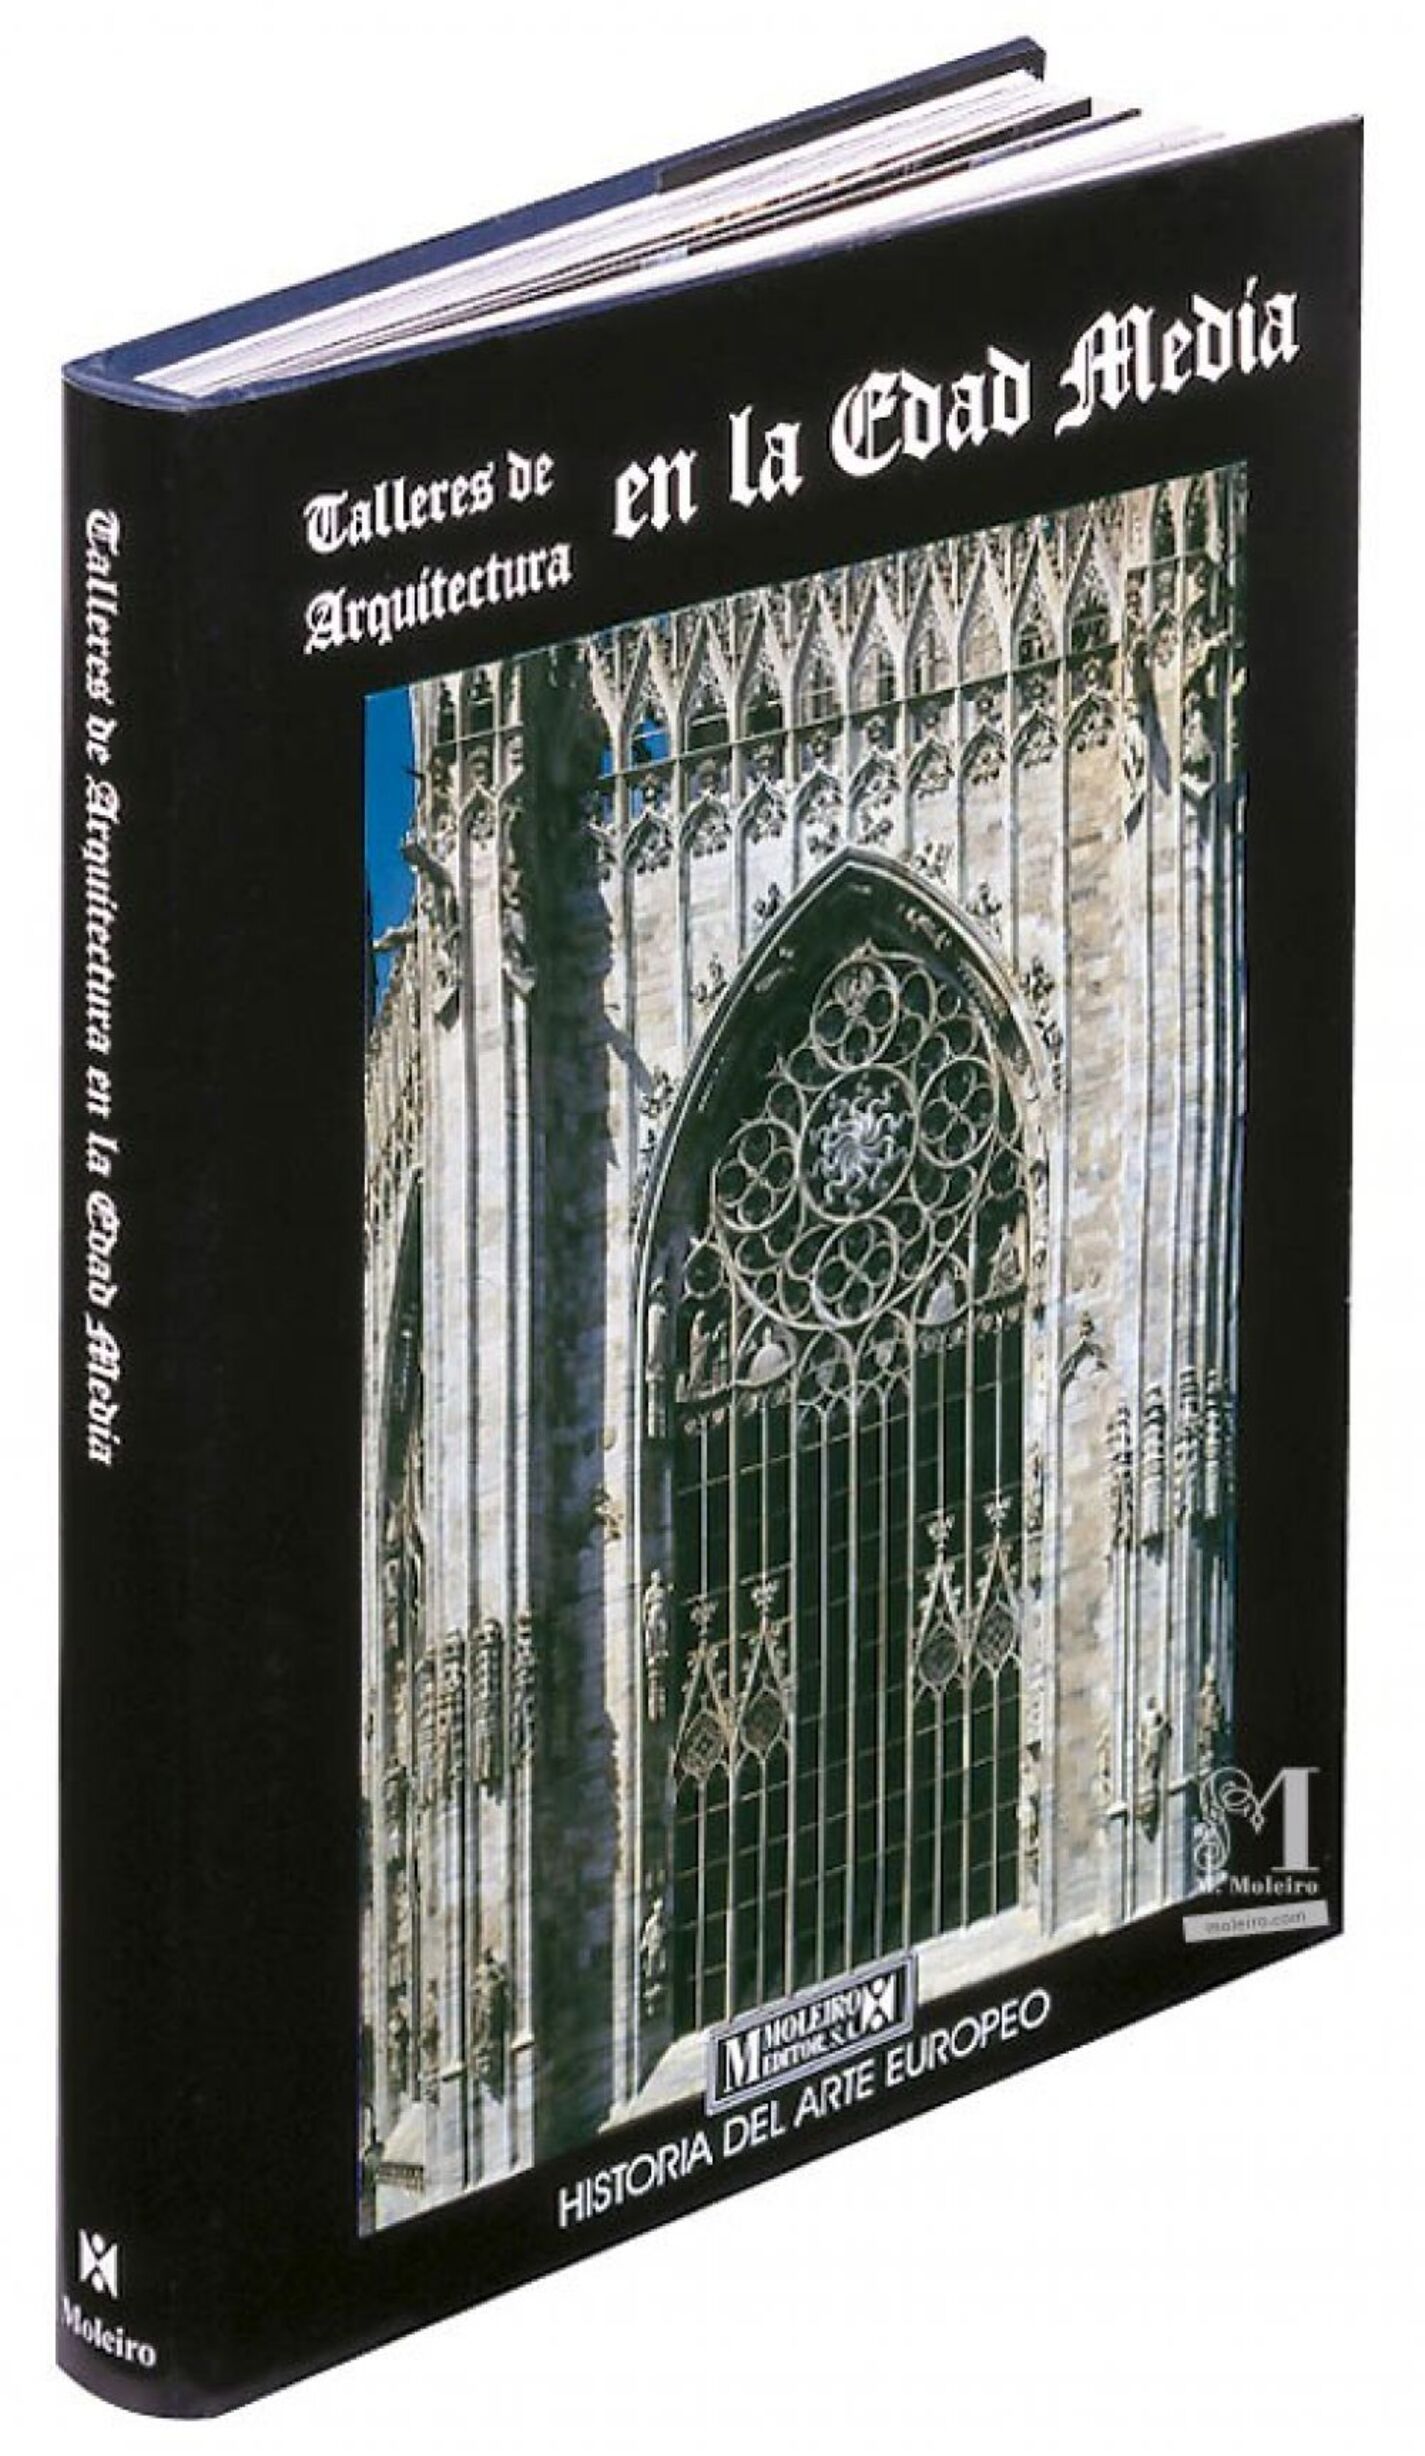 Detalle de la portada y lomo del libro de arte Talleres de Arquitectura en la Edad Media